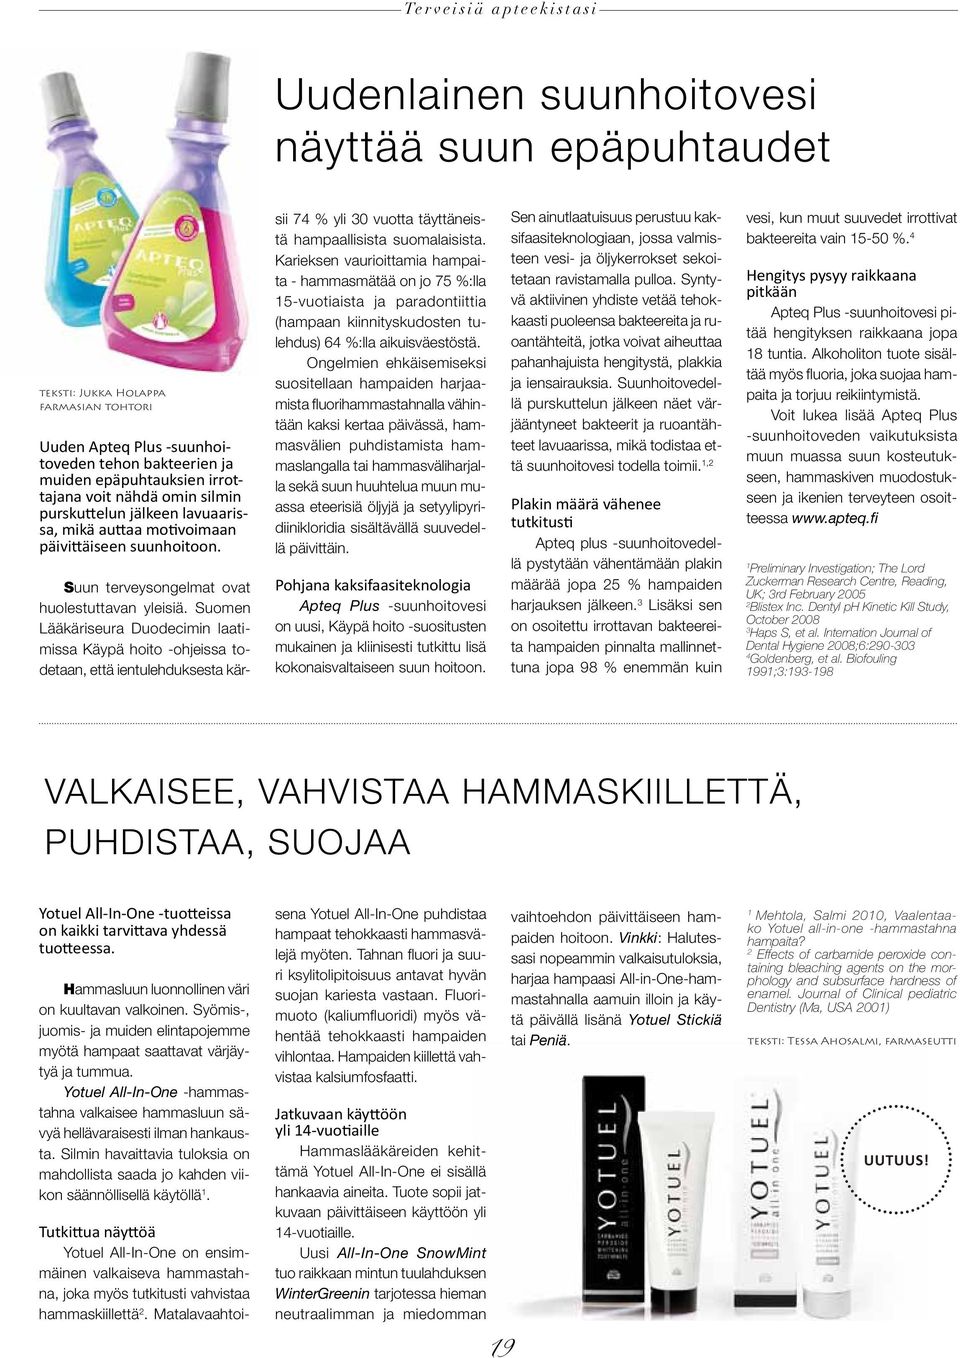 Suomen Lääkäriseura Duodecimin laatimissa Käypä hoito -ohjeissa todetaan, että ientulehduksesta kärsii 74 % yli 30 vuotta täyttäneistä hampaallisista suomalaisista.